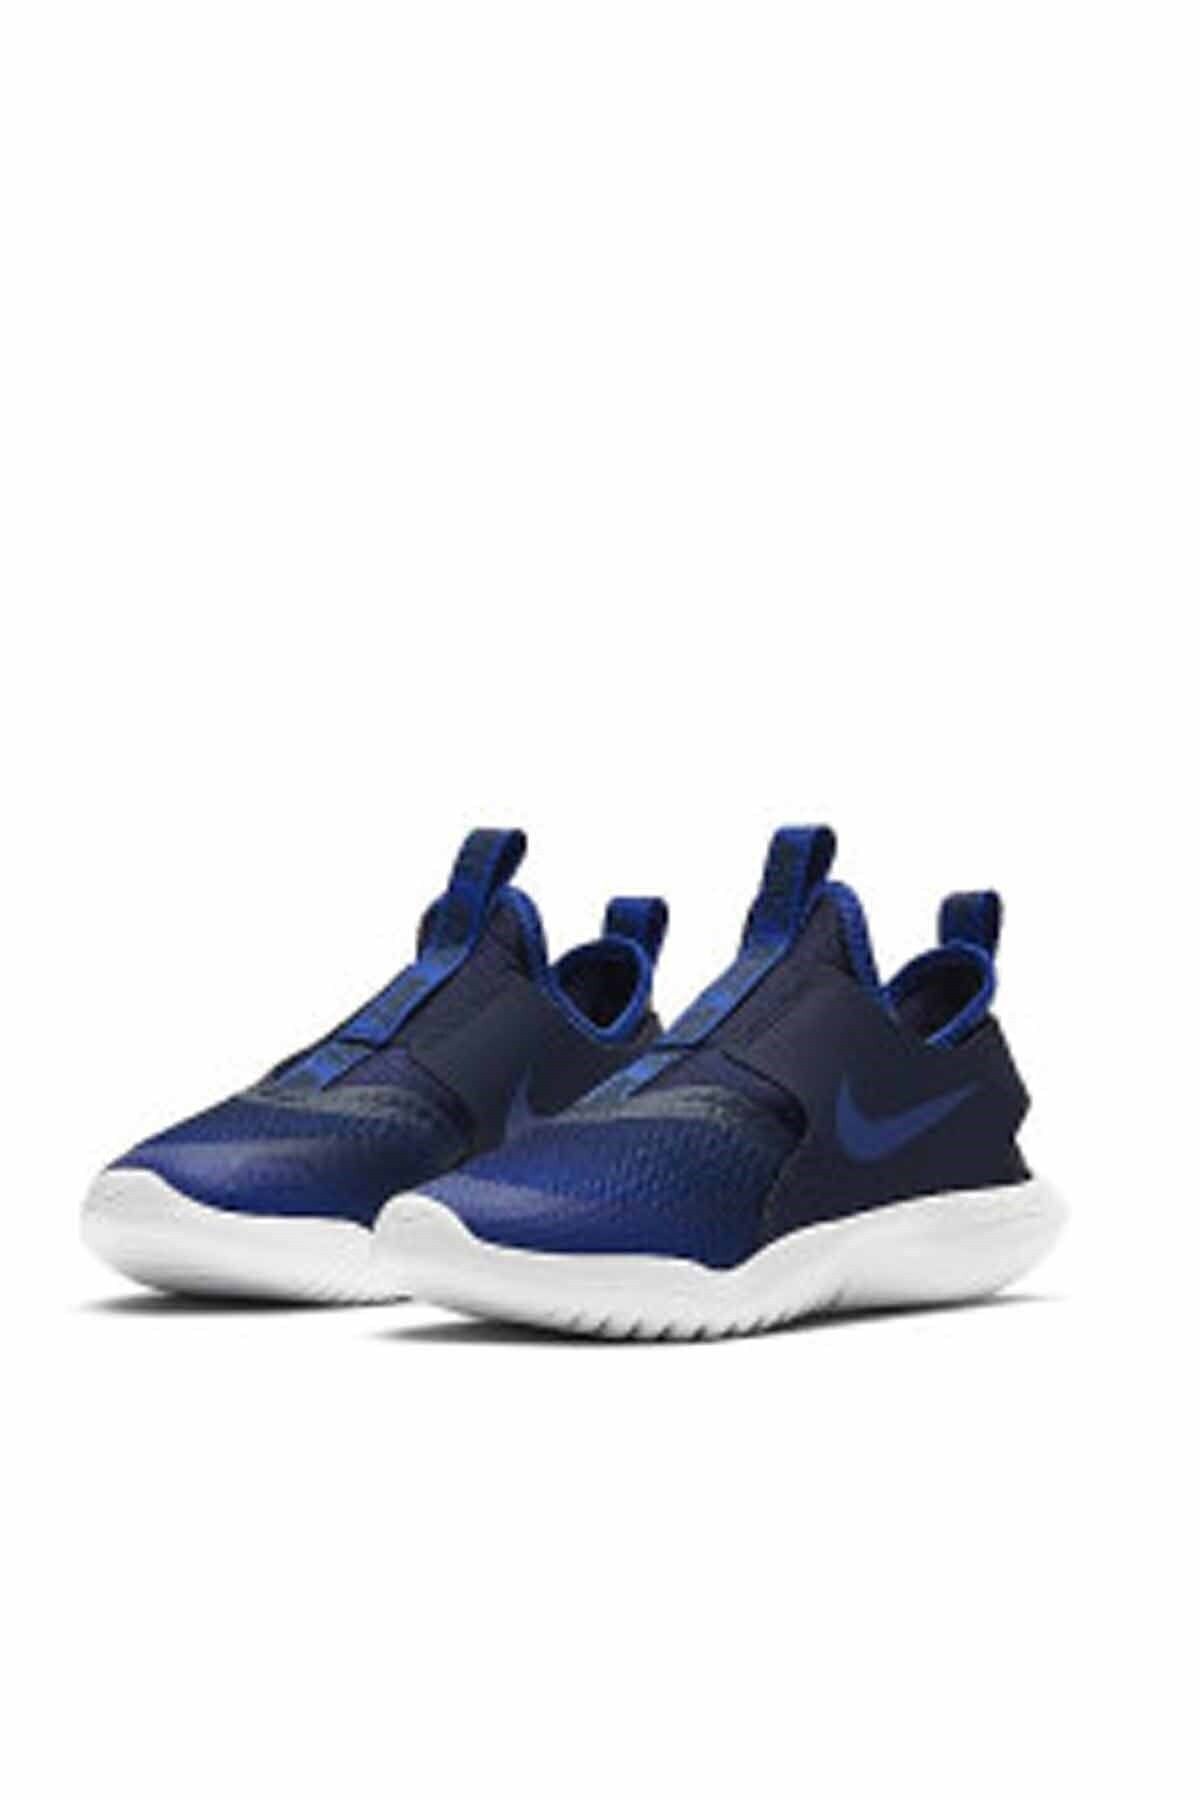 Nike Unisex Çocuk Lacivert Flex Runner Yürüyüş Koşu Ayakkabı At4663-407